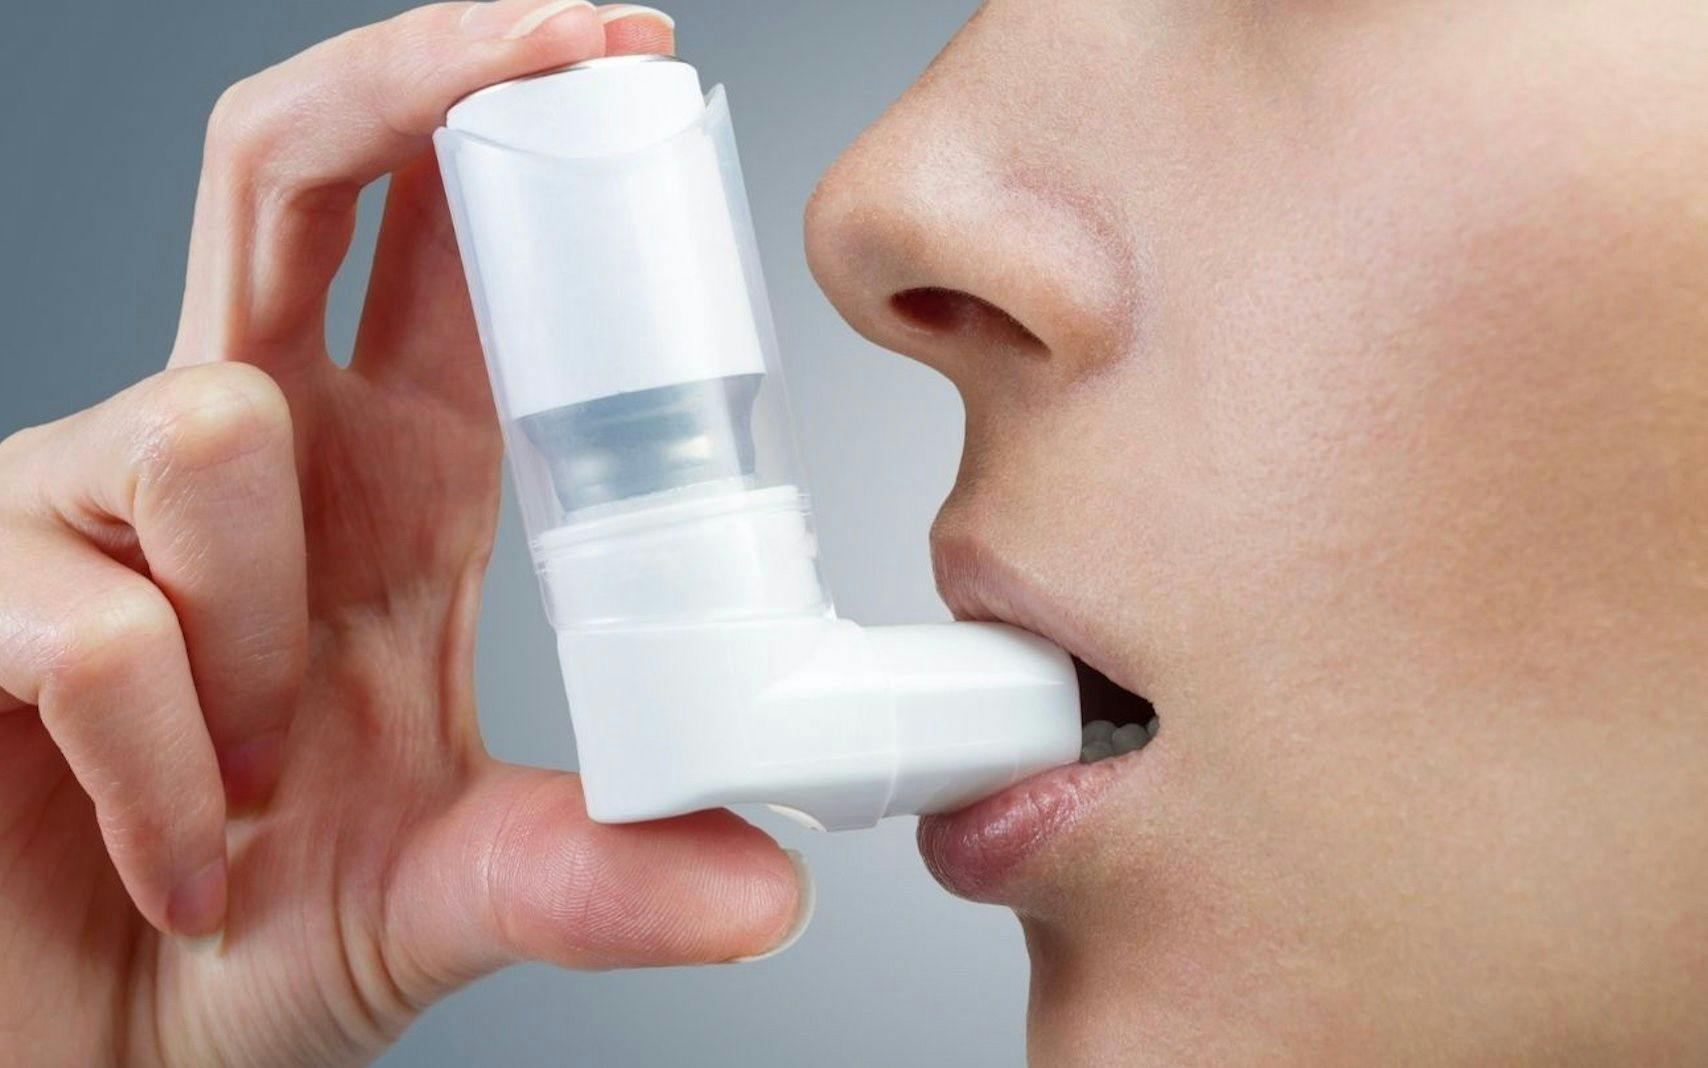 asthma patient using inhaler